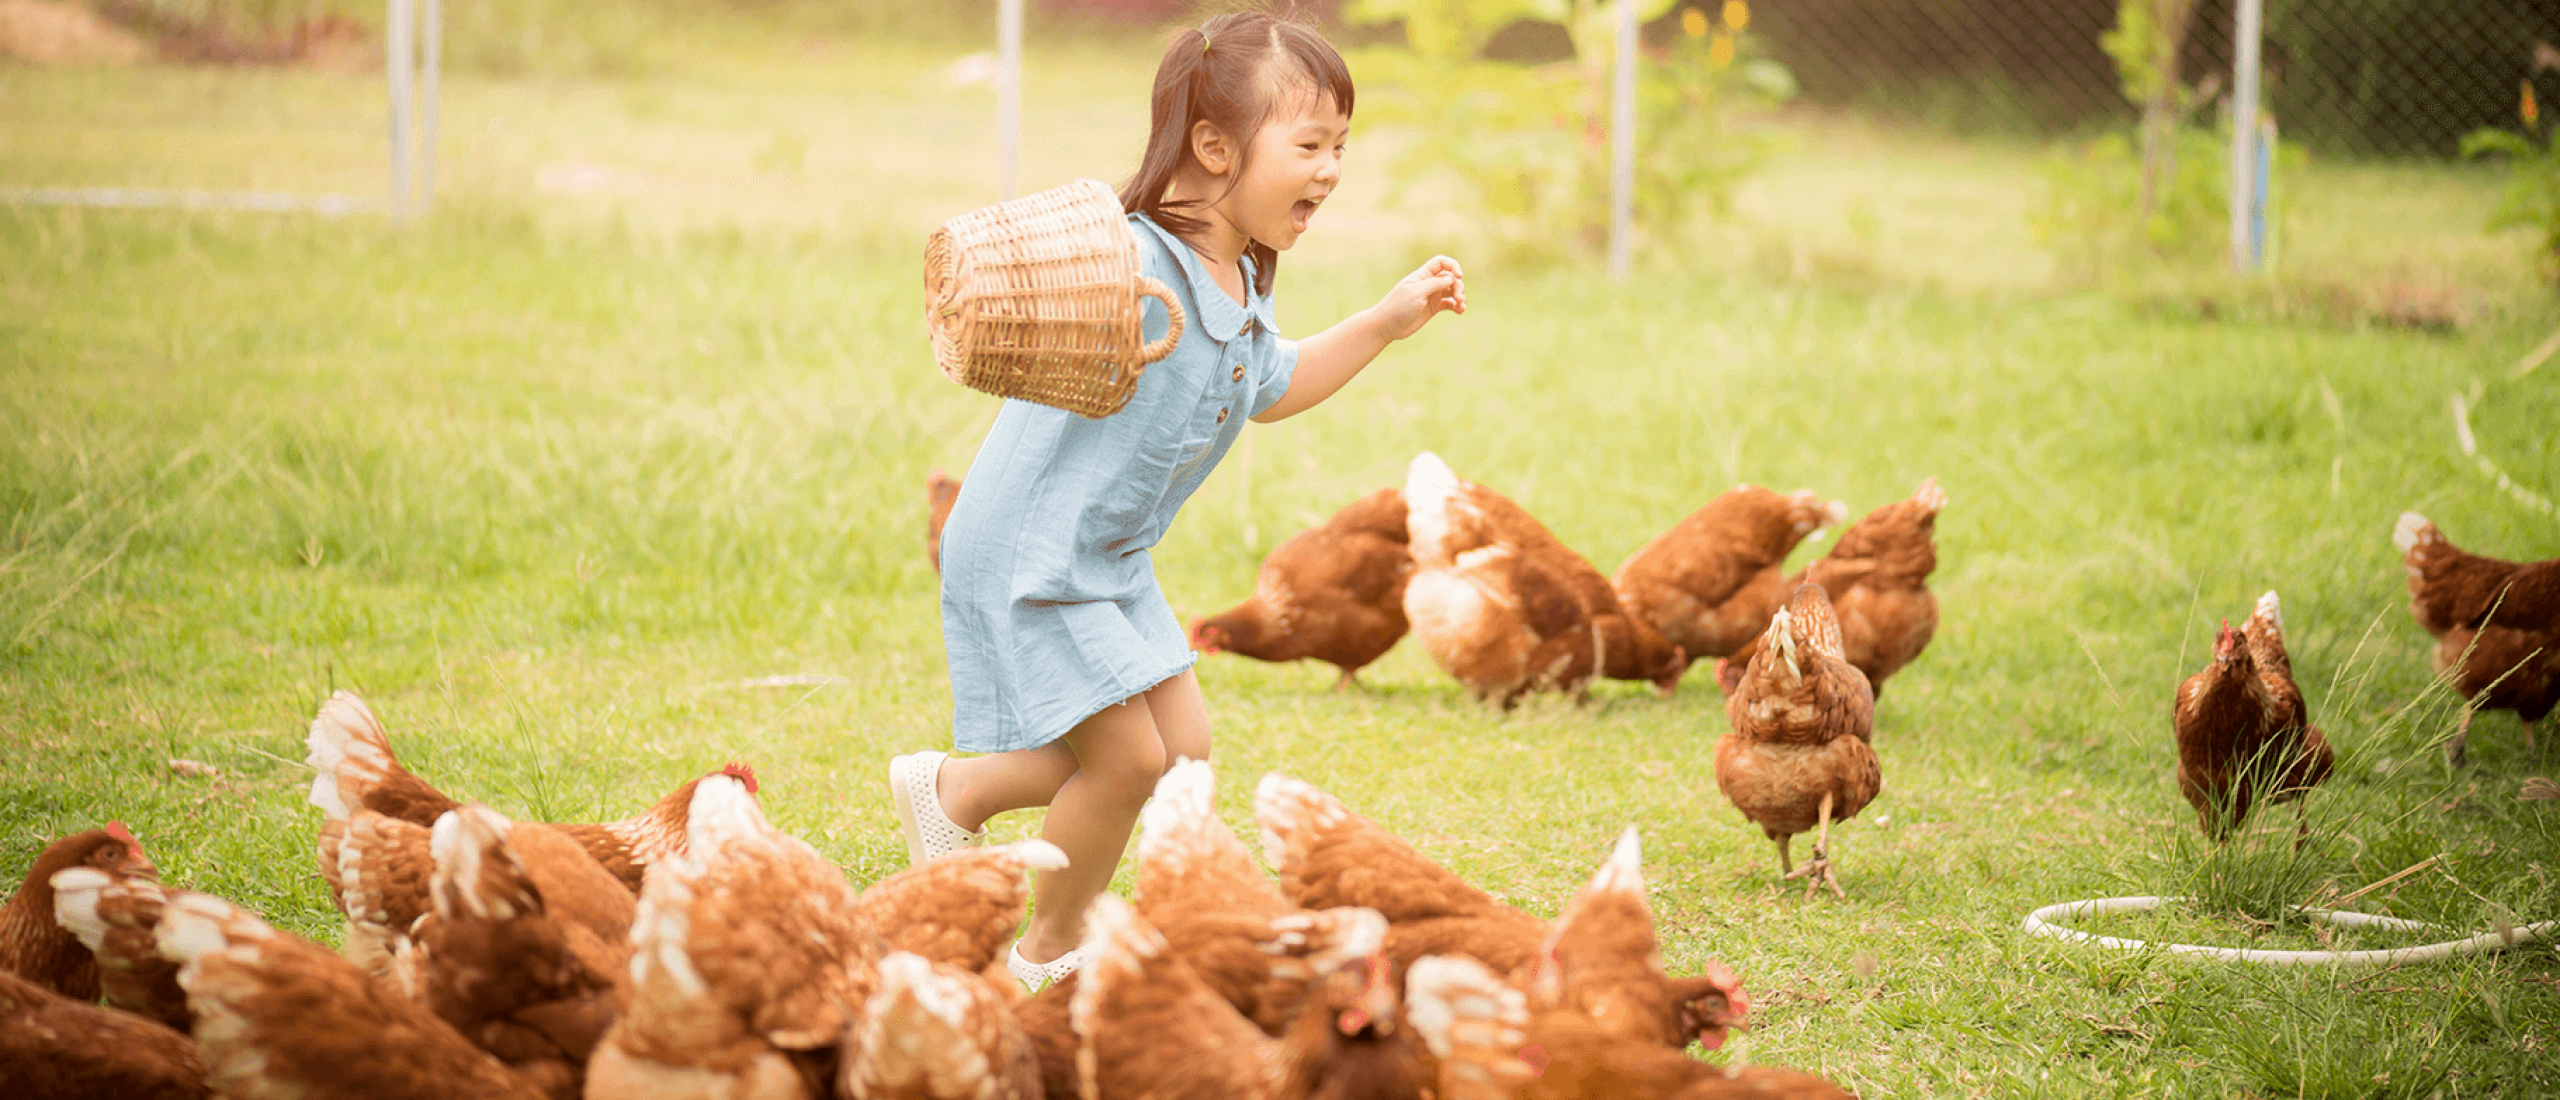 Hoe moet je kippen verzorgen?